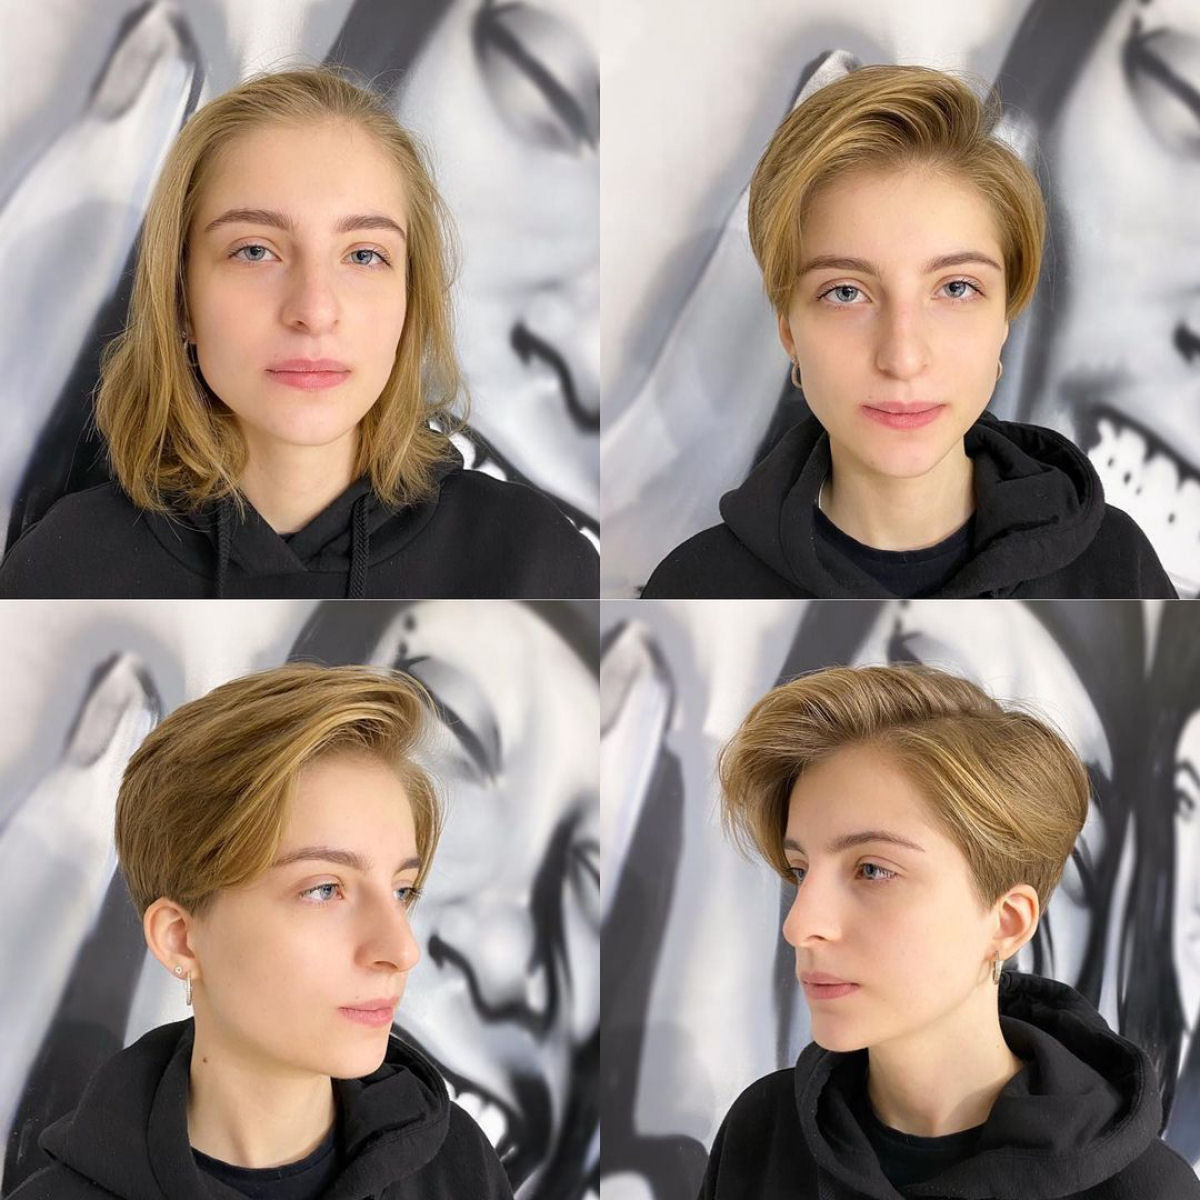 Cabeleireira moscovita demonstra que a beleza não se mede pelo comprimento do cabelo 03